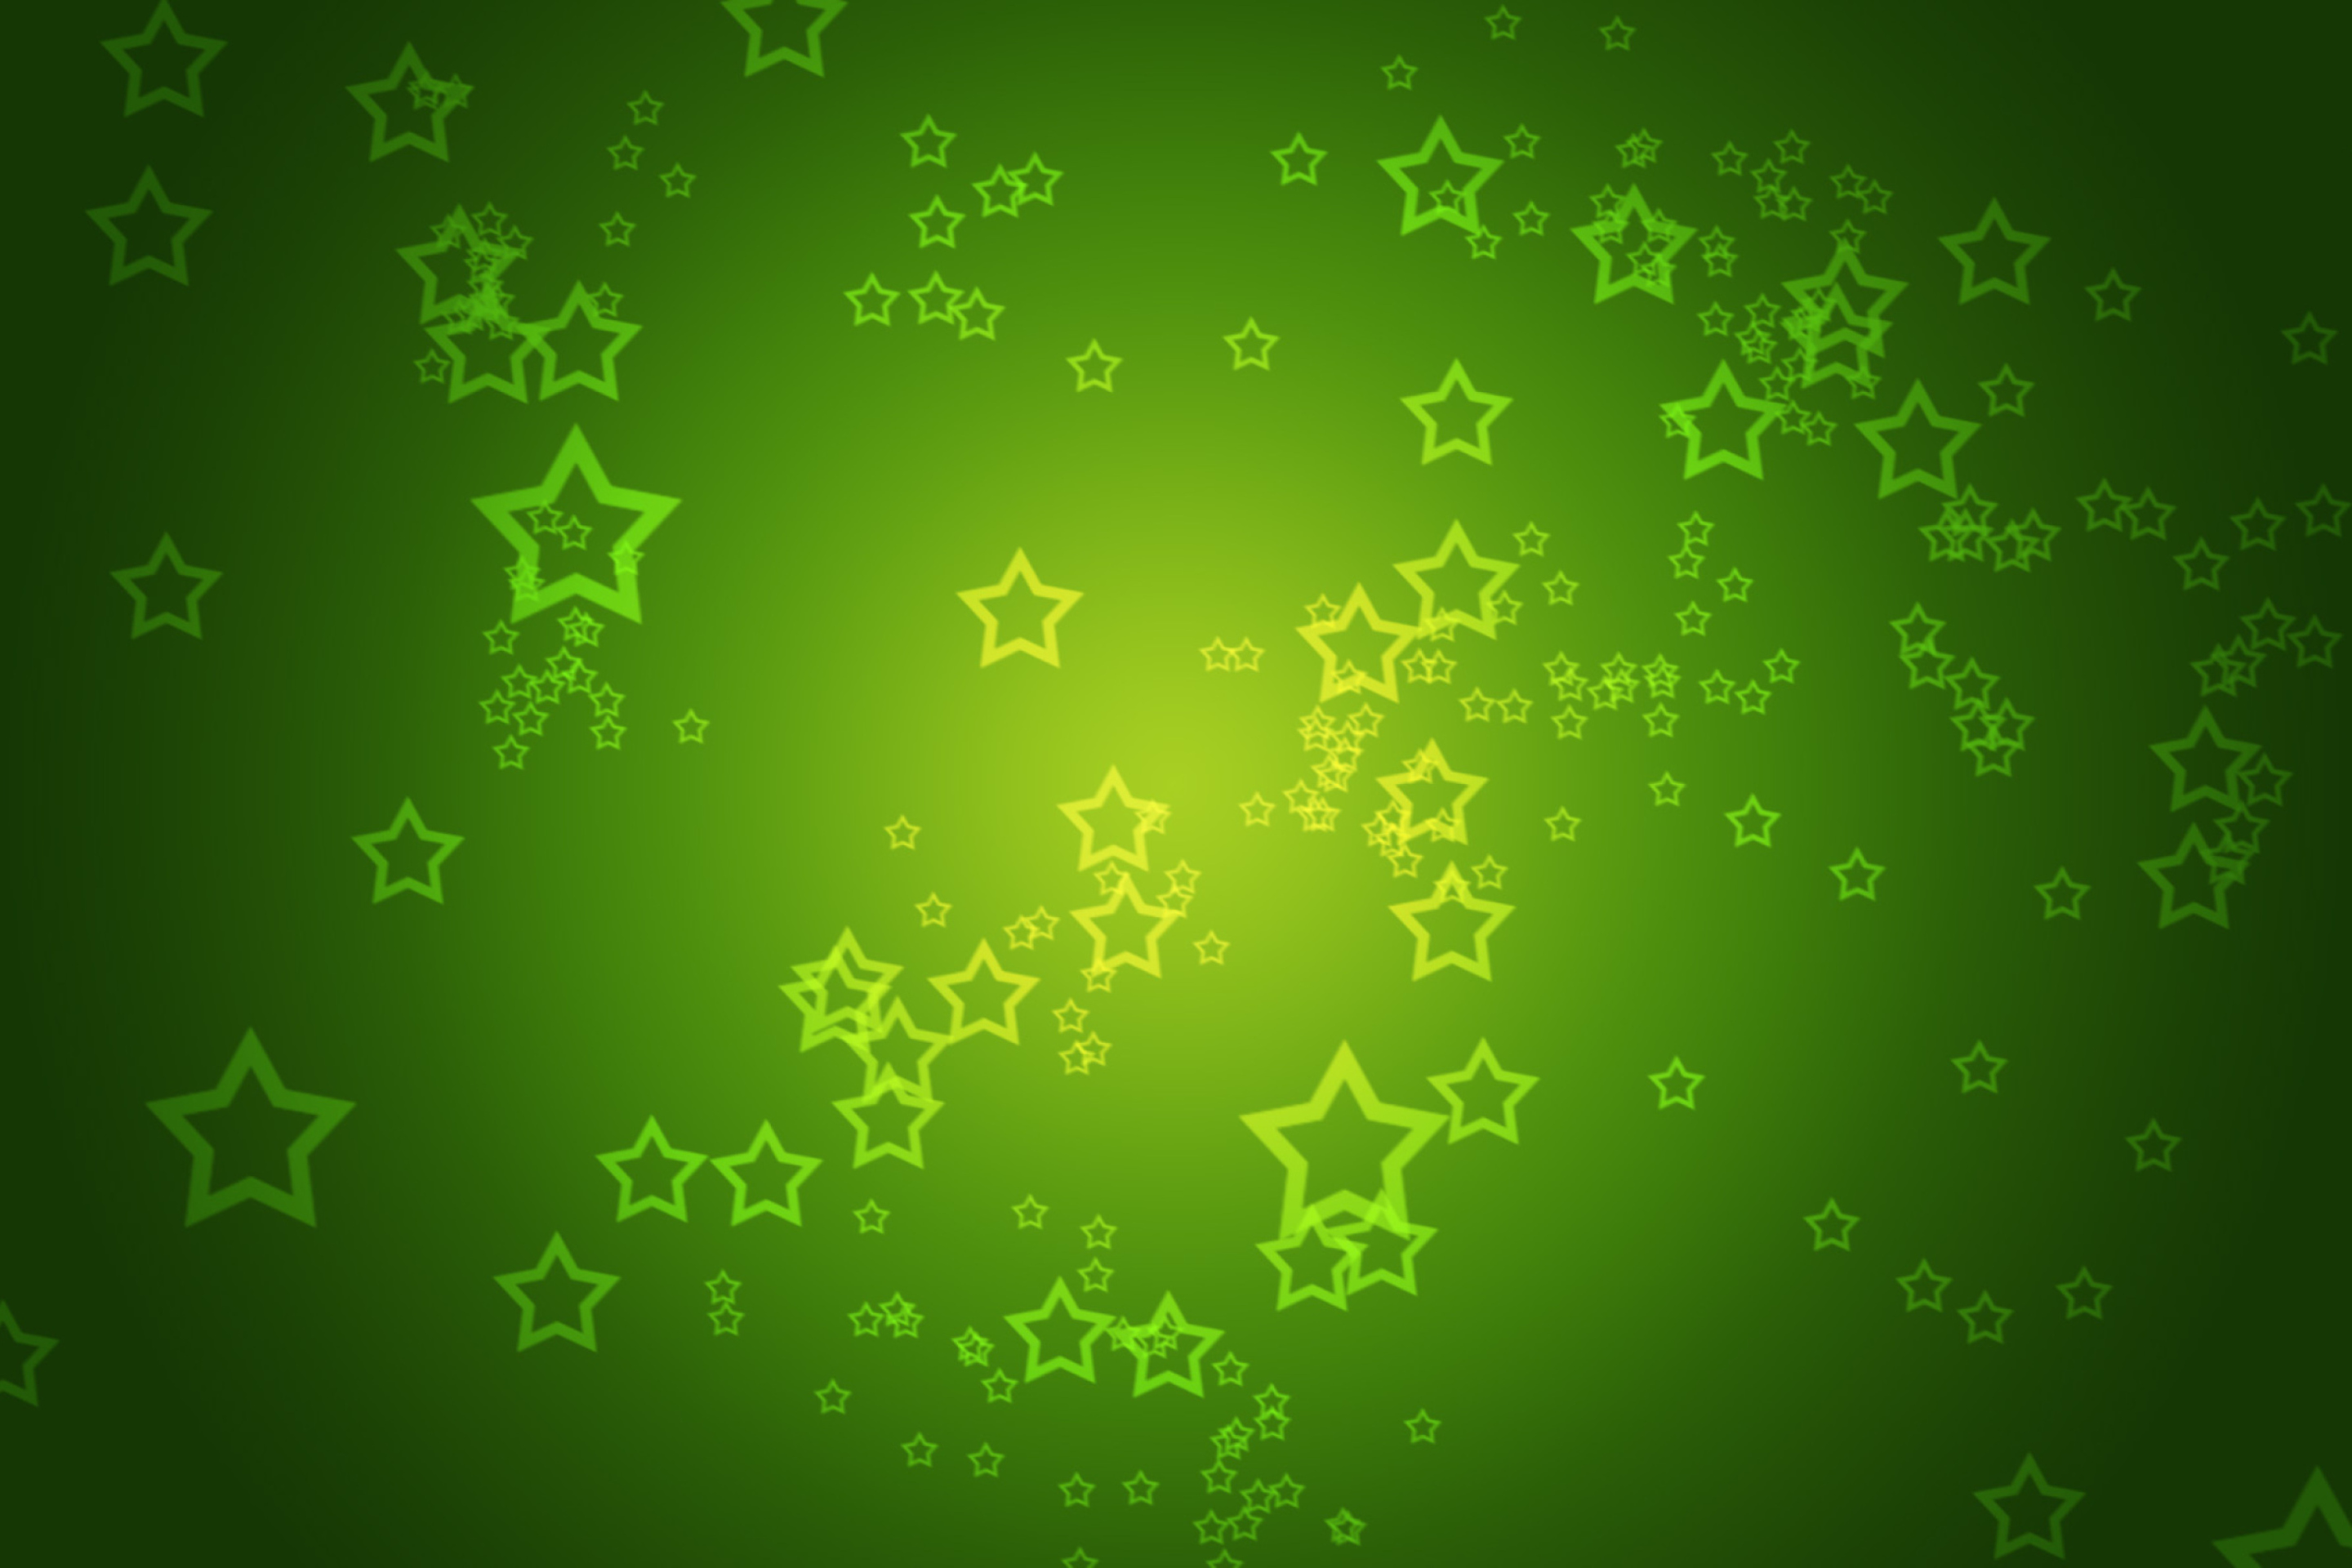 Das Green Stars Wallpaper 2880x1920